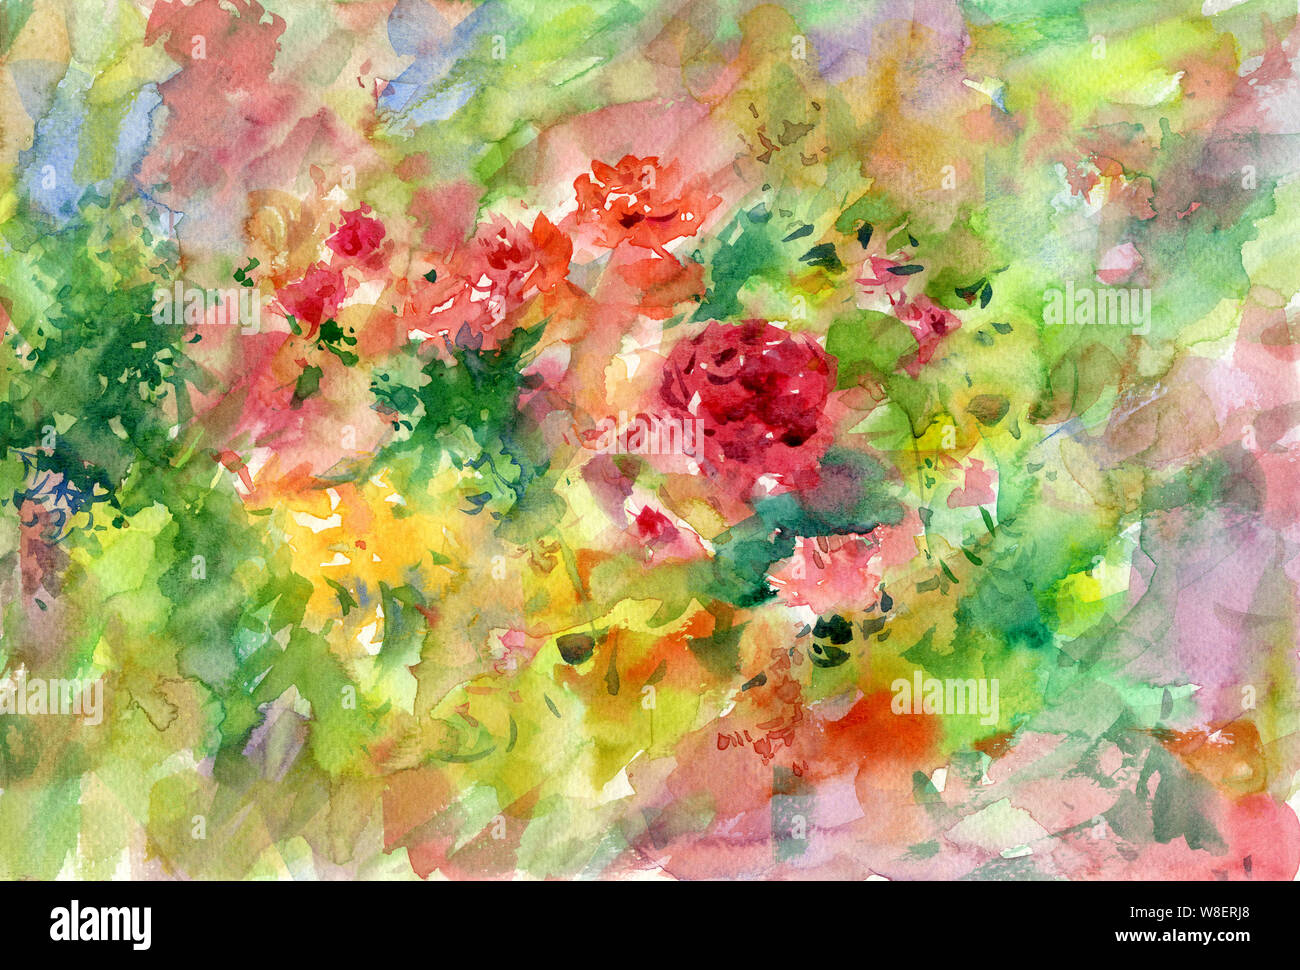 Résumé des fleurs colorées de l'aquarelle. Multicolore de printemps Banque D'Images